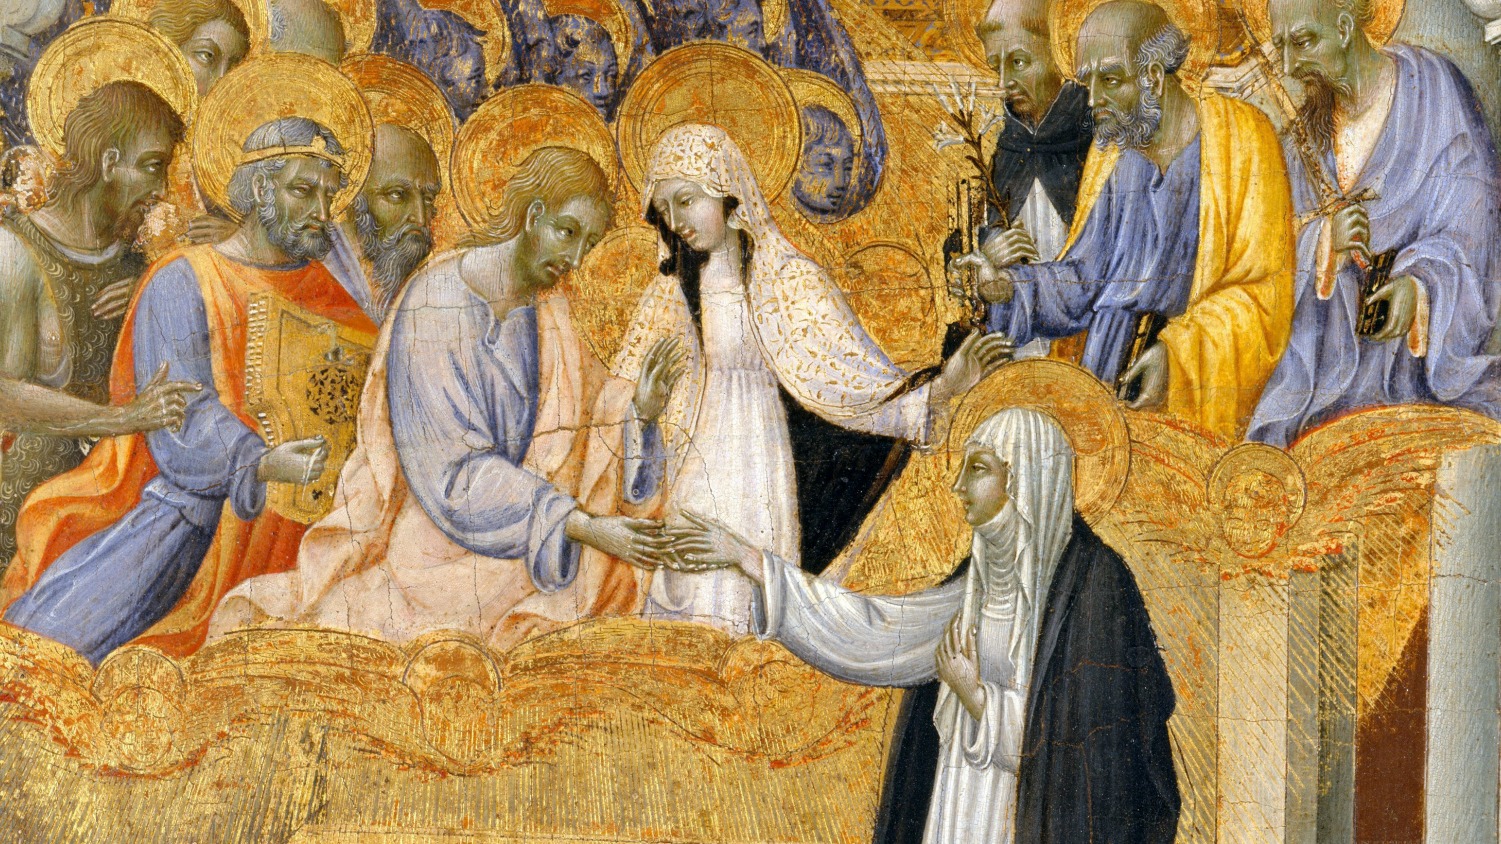 Le mariage mystique de Catherine de Sienne par Giovanni di Paolo, en 1460